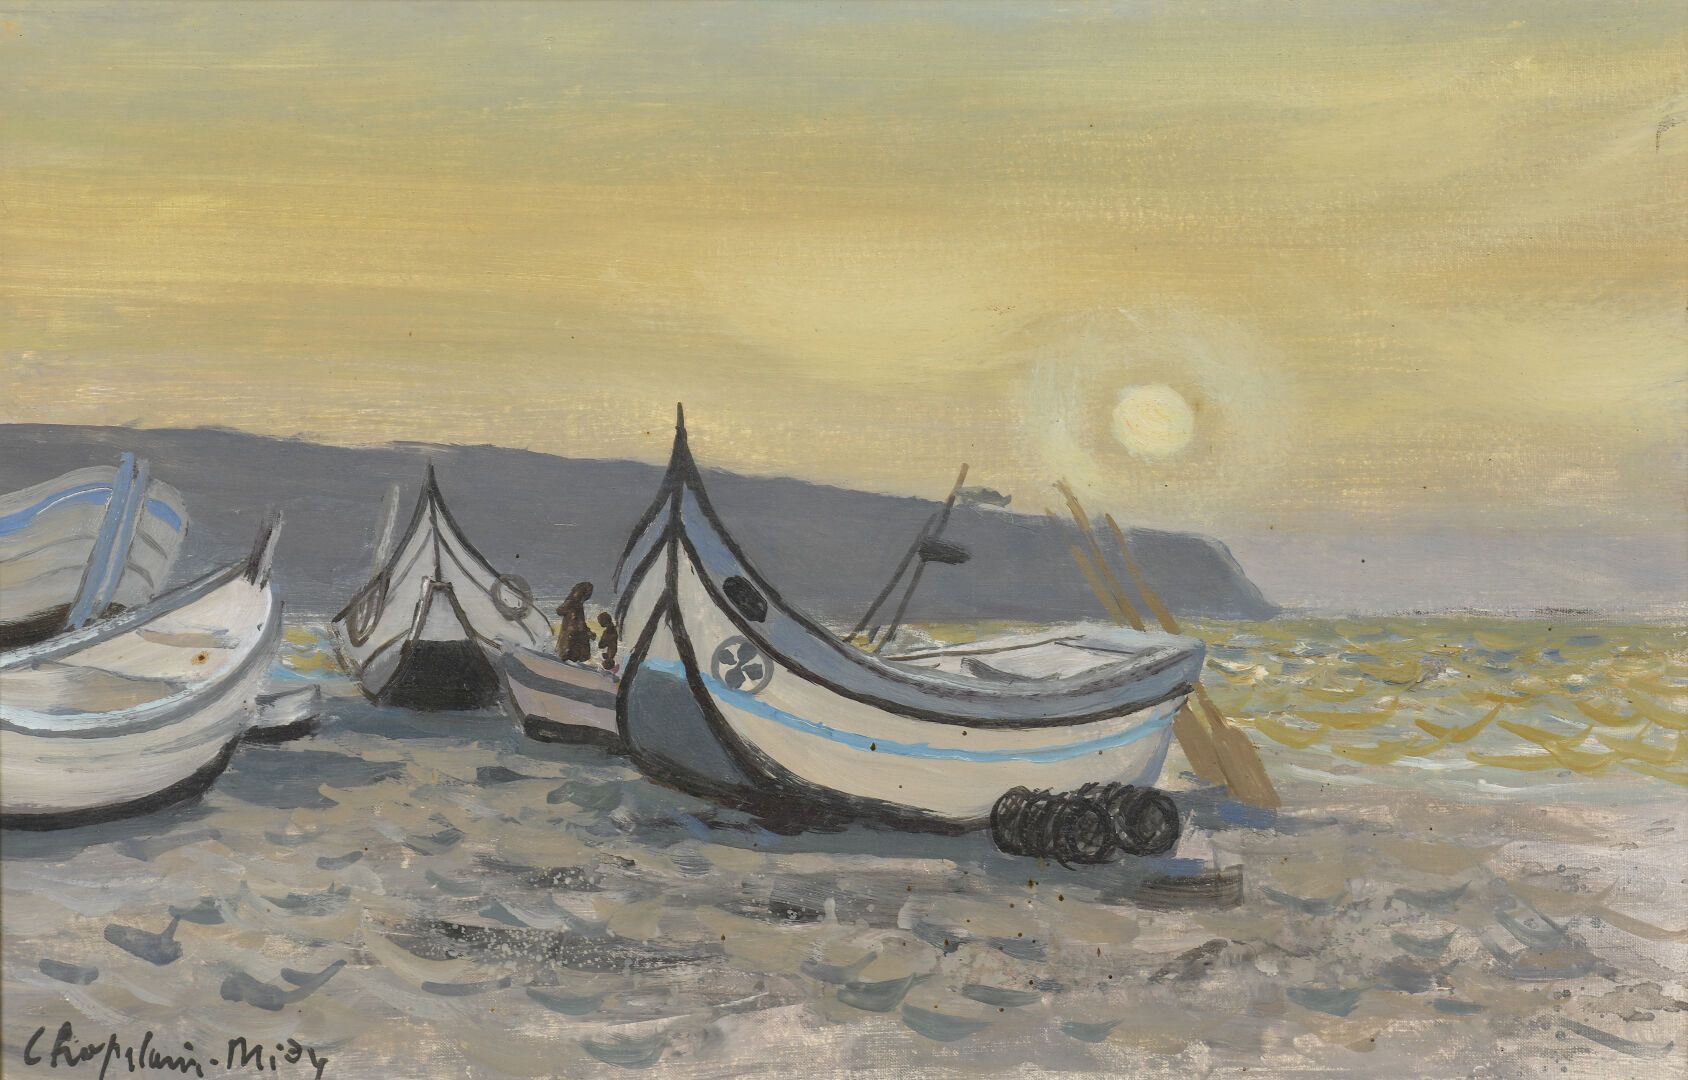 Null 罗杰-夏佩兰-米迪 (1904-1992)
在纳扎雷的海滩上
布面油画，左下方签名。
27 x 41 cl